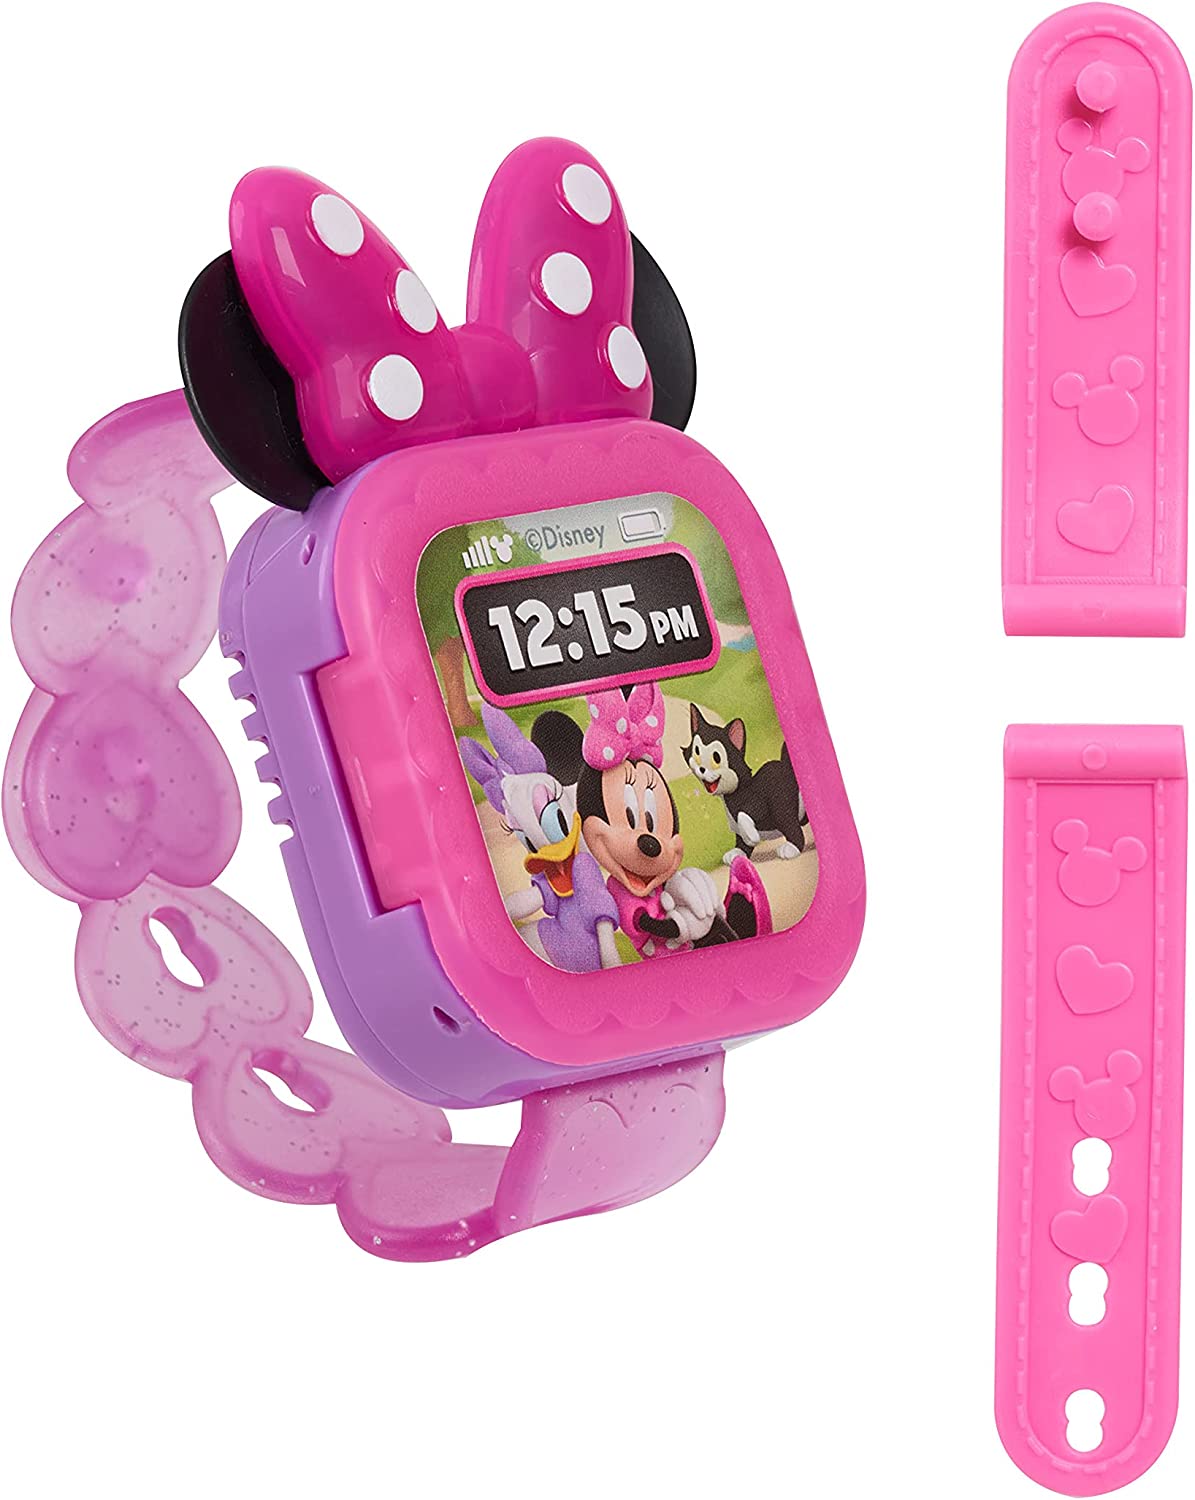  ミニーマウス スマートウォッチ 腕時計 ピンク 光る ミニー プリンセス 可愛い おしゃれ おままごと おもちゃ 子供 赤ちゃん ベビー なりきり ごっこ遊び 誕生日 クリスマス 女の子 男の子 Just Play Minnie Mouse Play Smart Watch, Pink